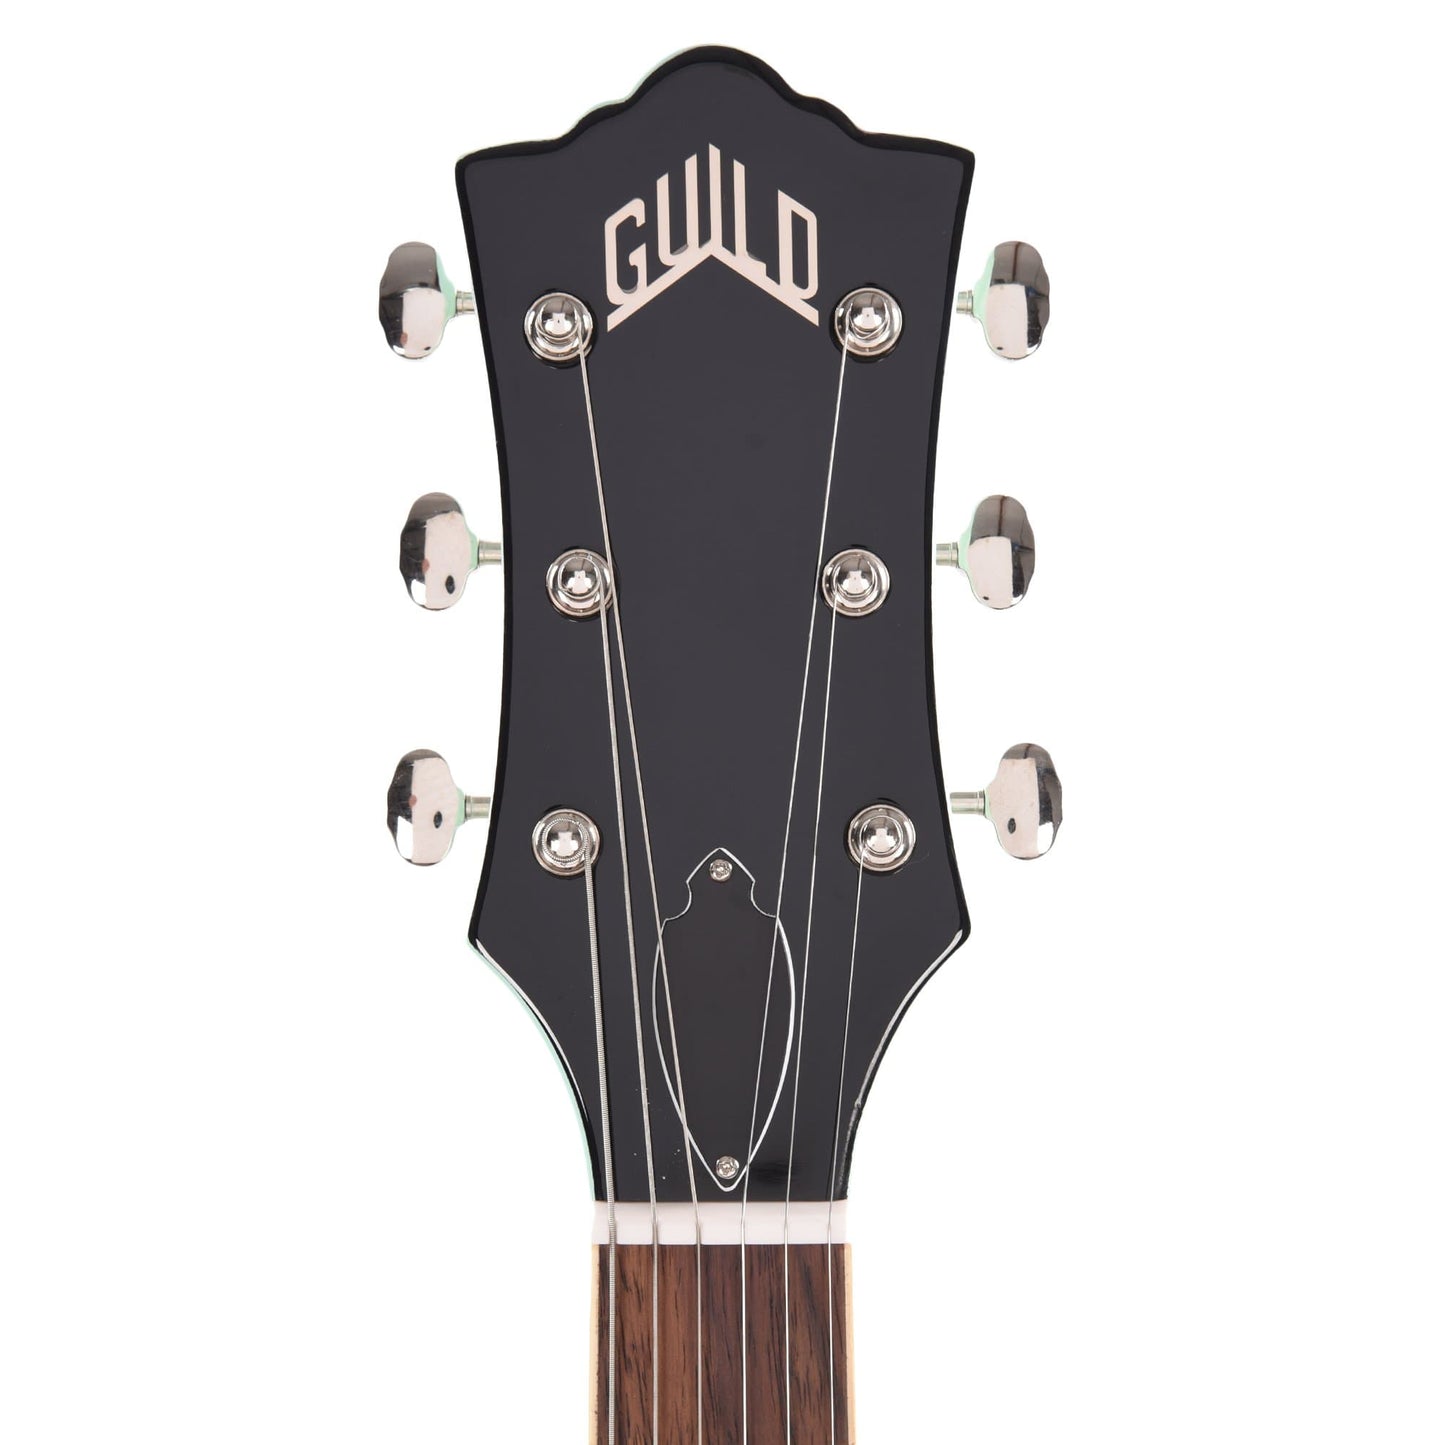 Guild Starfire I SC Seafoam Green w/Guild Vibrato Tailpiece Electric Guitars / Semi-Hollow